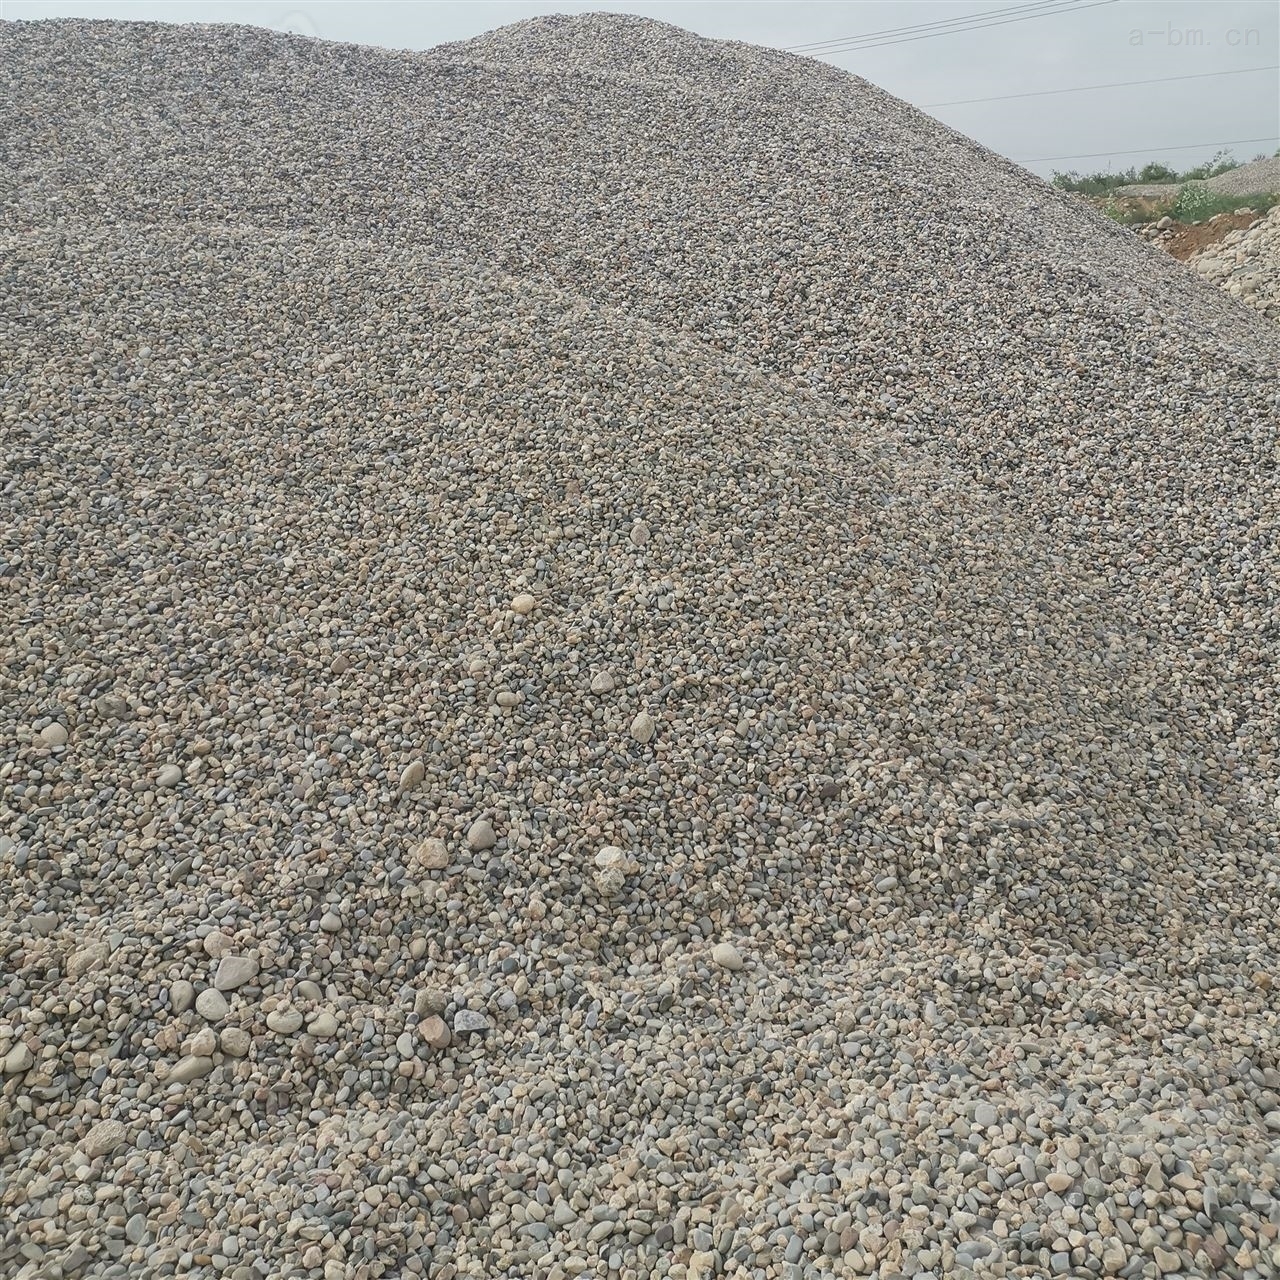 布石供应湿地园林 河滩河岸用8-16cm鹅卵石